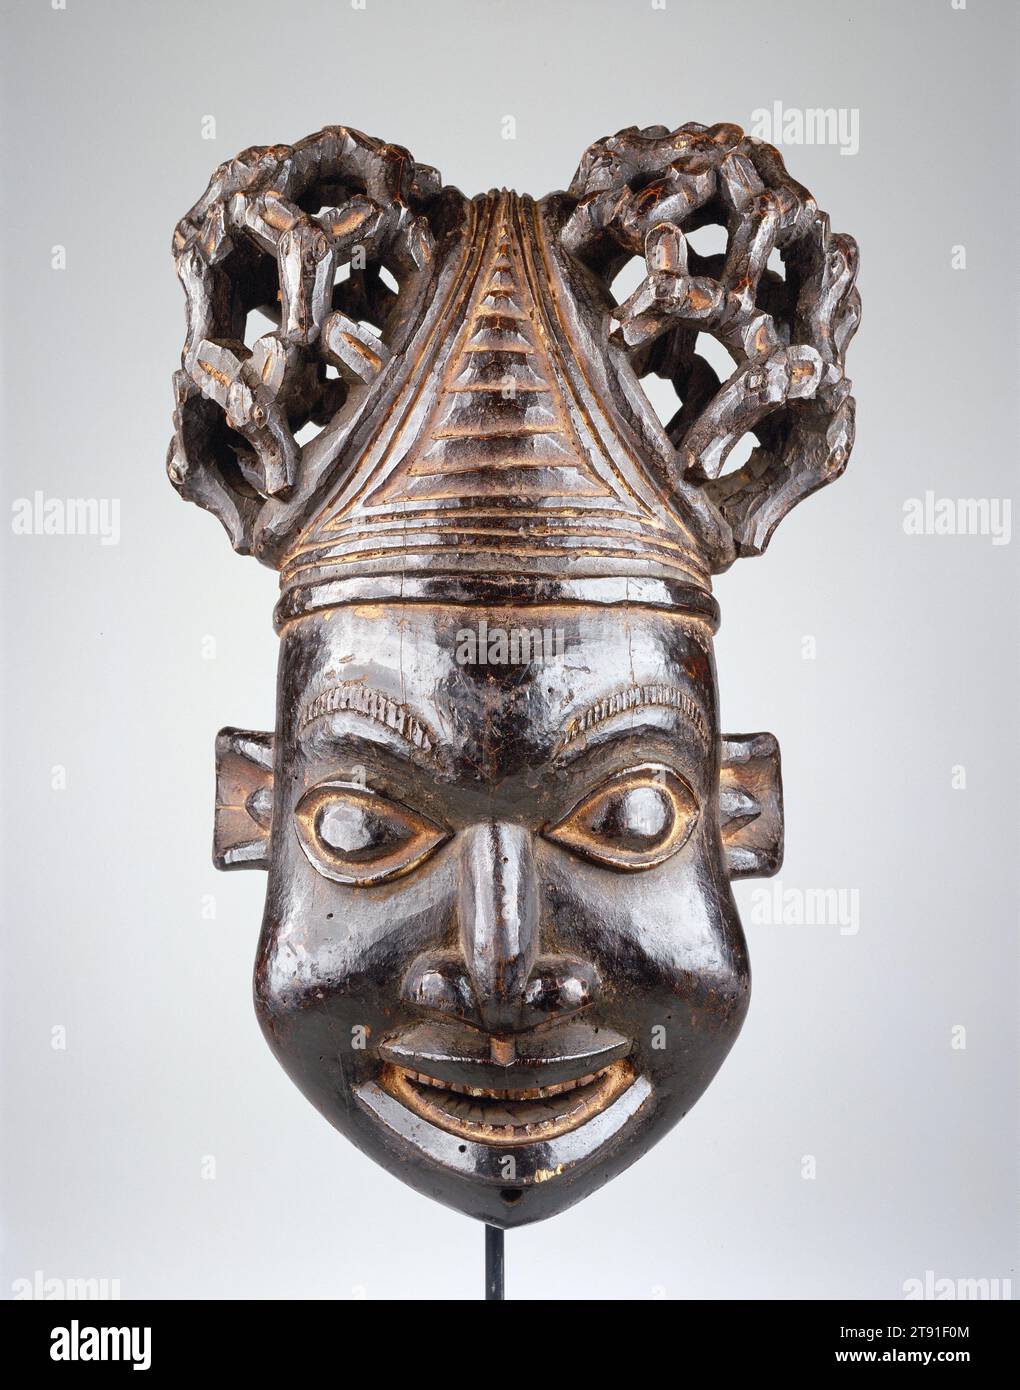 Máscara, siglo XX, 21 x 14 1/4 x 11 1/4 in. (53,3 x 36,2 x 28,6 cm), Madera, Camerún, siglo XX, esta máscara de casco es parte de un grupo de máscaras de linaje, o una familia de máscaras que actúan juntas. Representa el rostro humano masculino y simboliza un antepasado real o de clan. Máscaras como estas suelen actuar en funerales o celebraciones conmemorativas. Esta máscara se usa en la parte superior de la cabeza, mientras que un velo de malla oculta la cara del artista Foto de stock